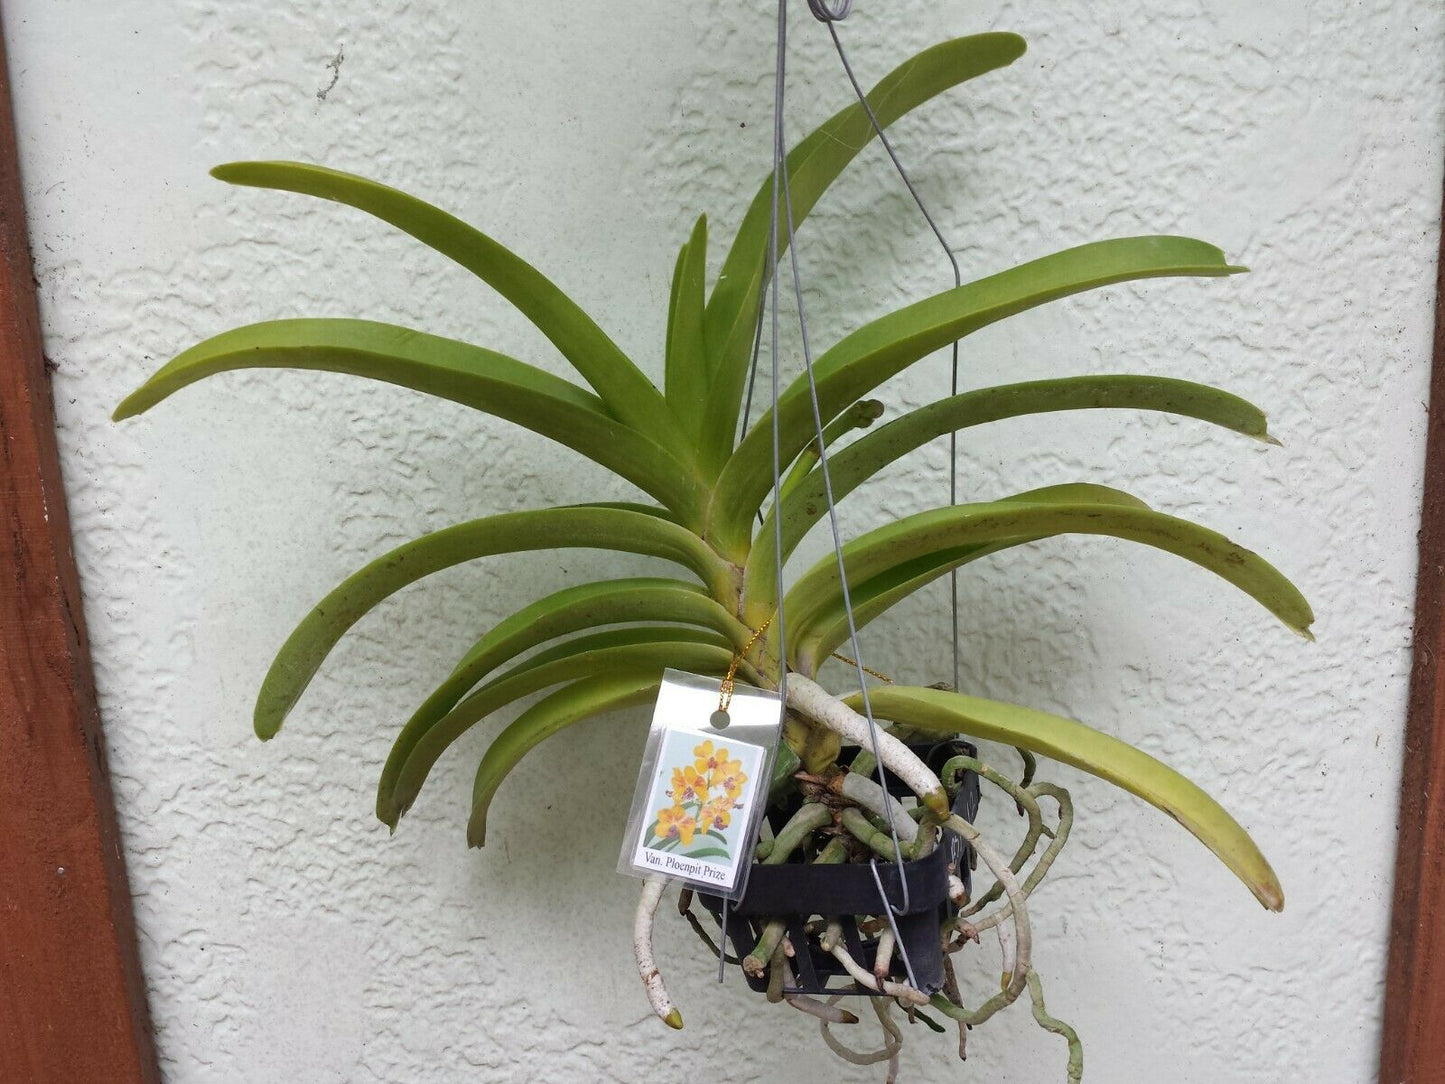 Vanda Ploenpit Prize Fragrant Tropical Plants